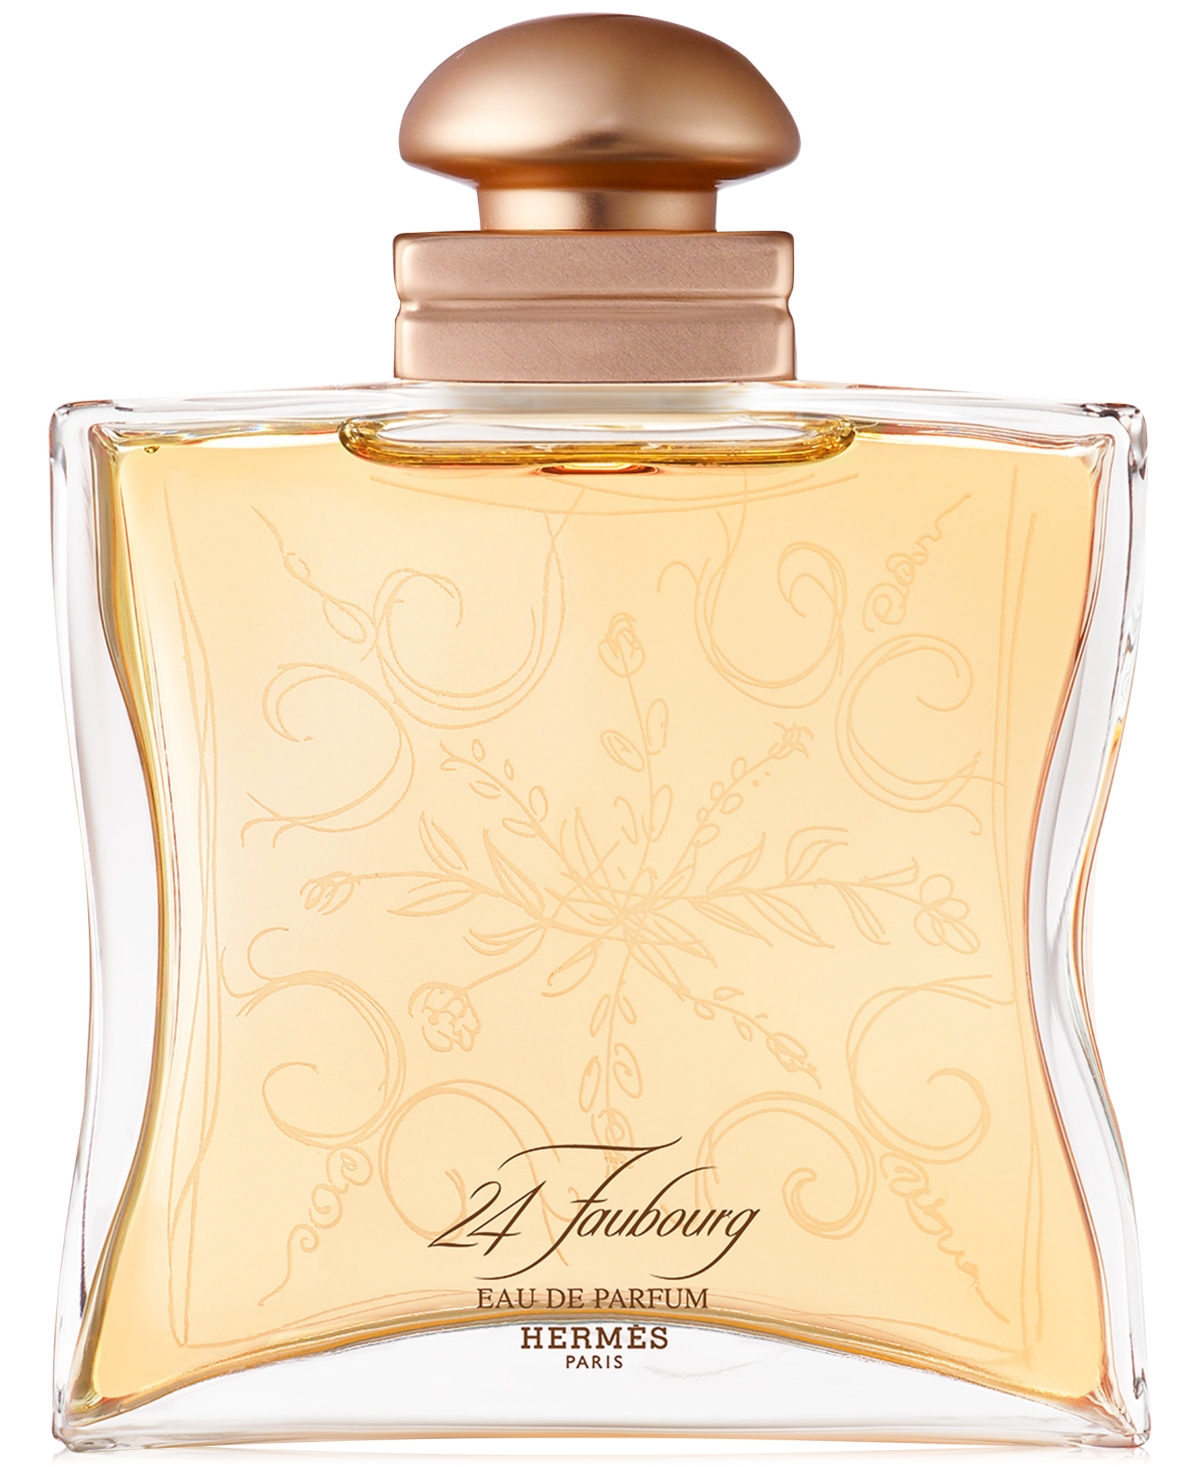 EAN 3346131610204 product image for HERMES 24 Faubourg Eau de Parfum, 3.3-oz. | upcitemdb.com